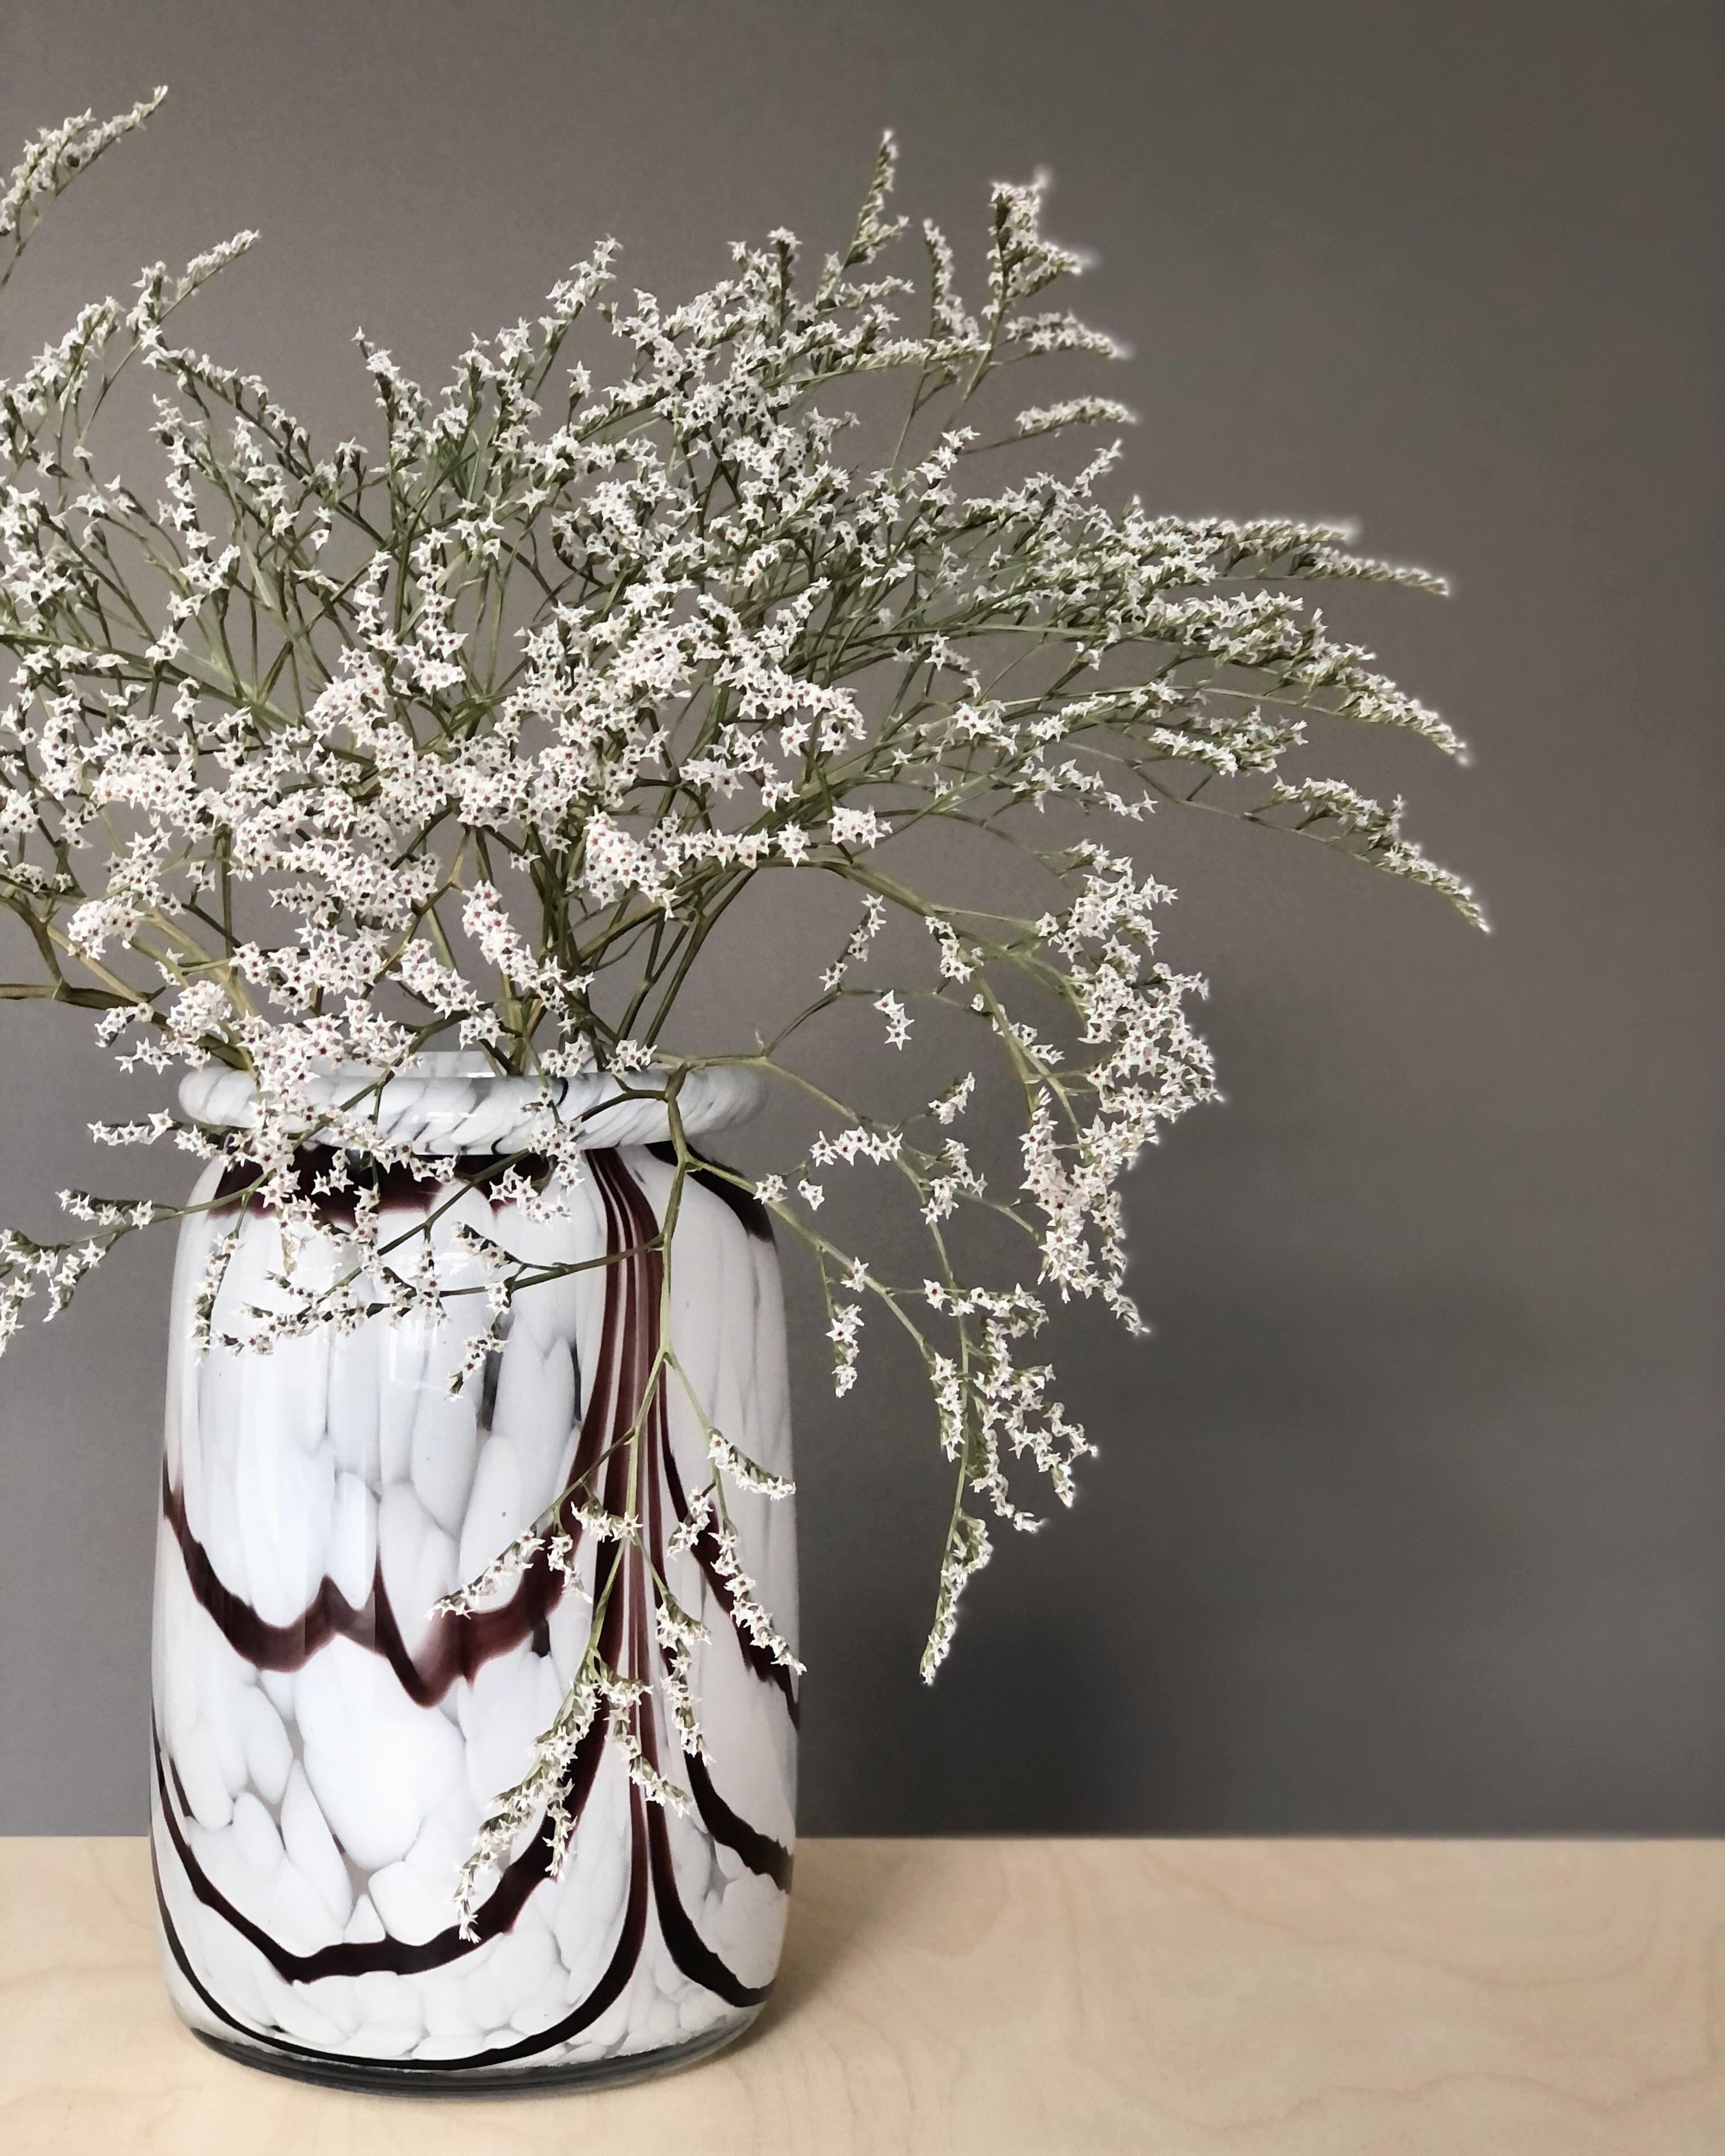 #vase #trockenblumen #deko #dekoration #homedecor #home #autumn #herbstdeko #wohnen #interior #couchstyle #wandfarbe